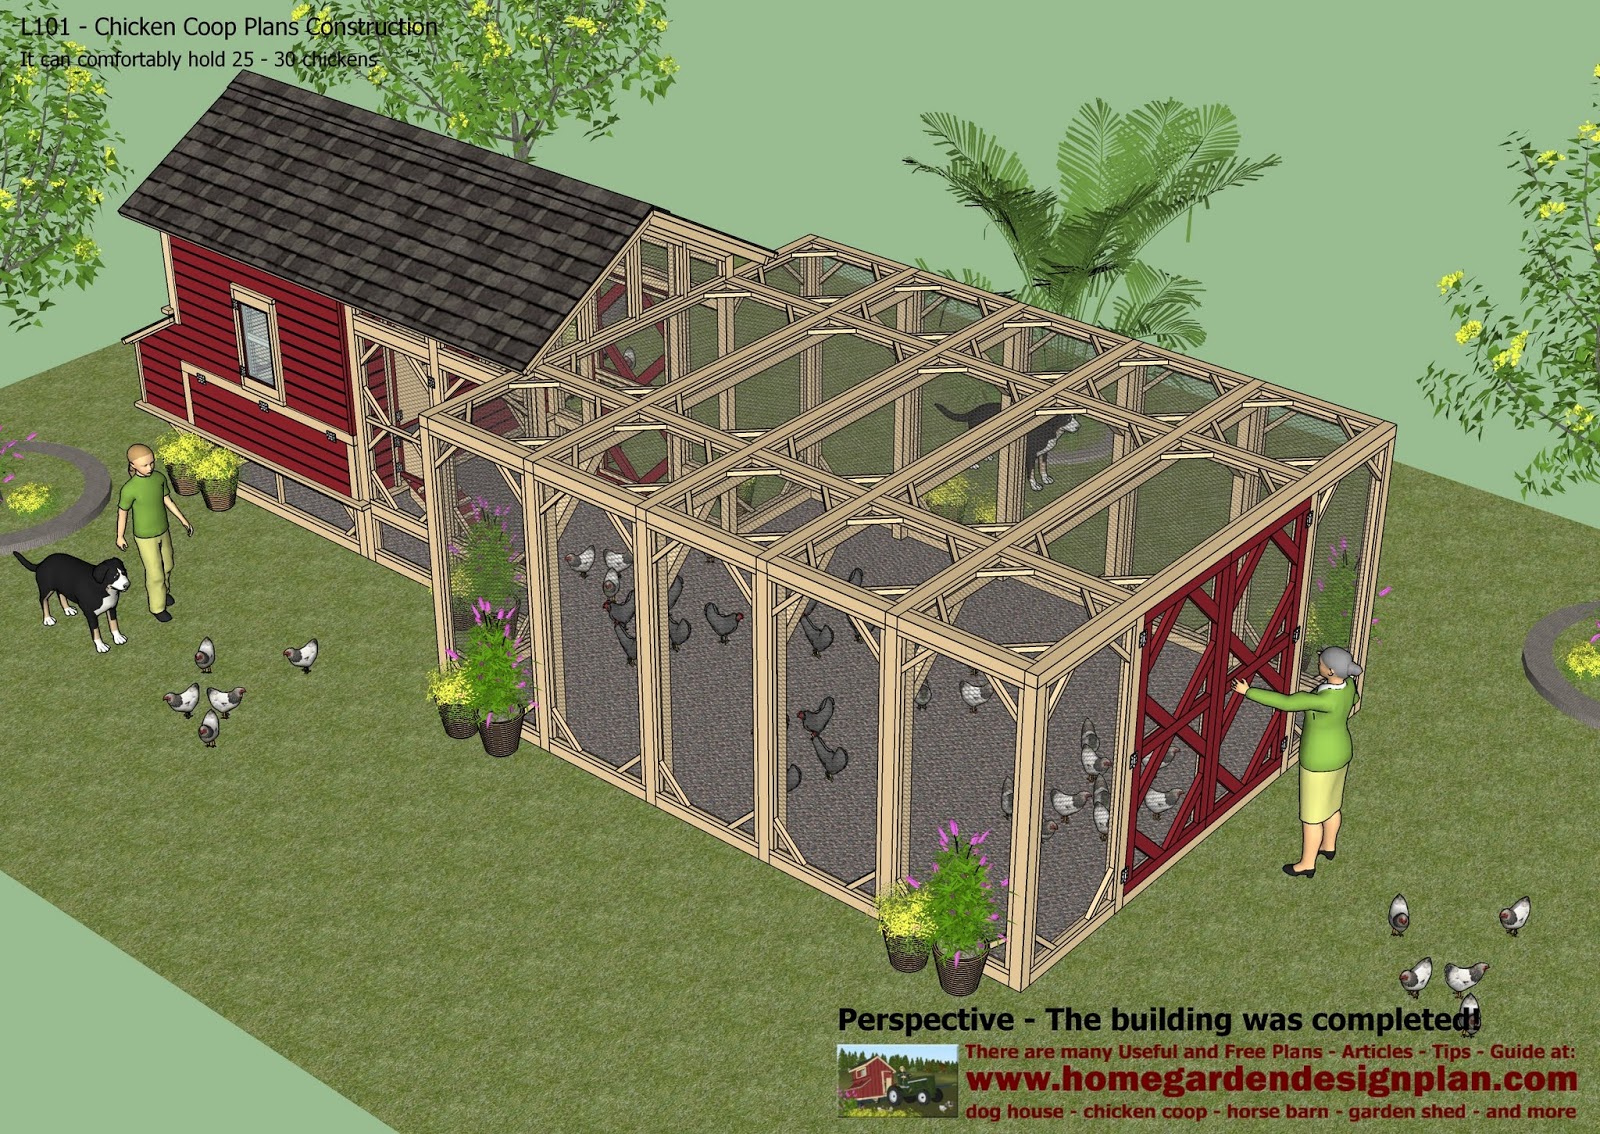 home garden plans: home garden plans: L101 - Chicken Coop ...